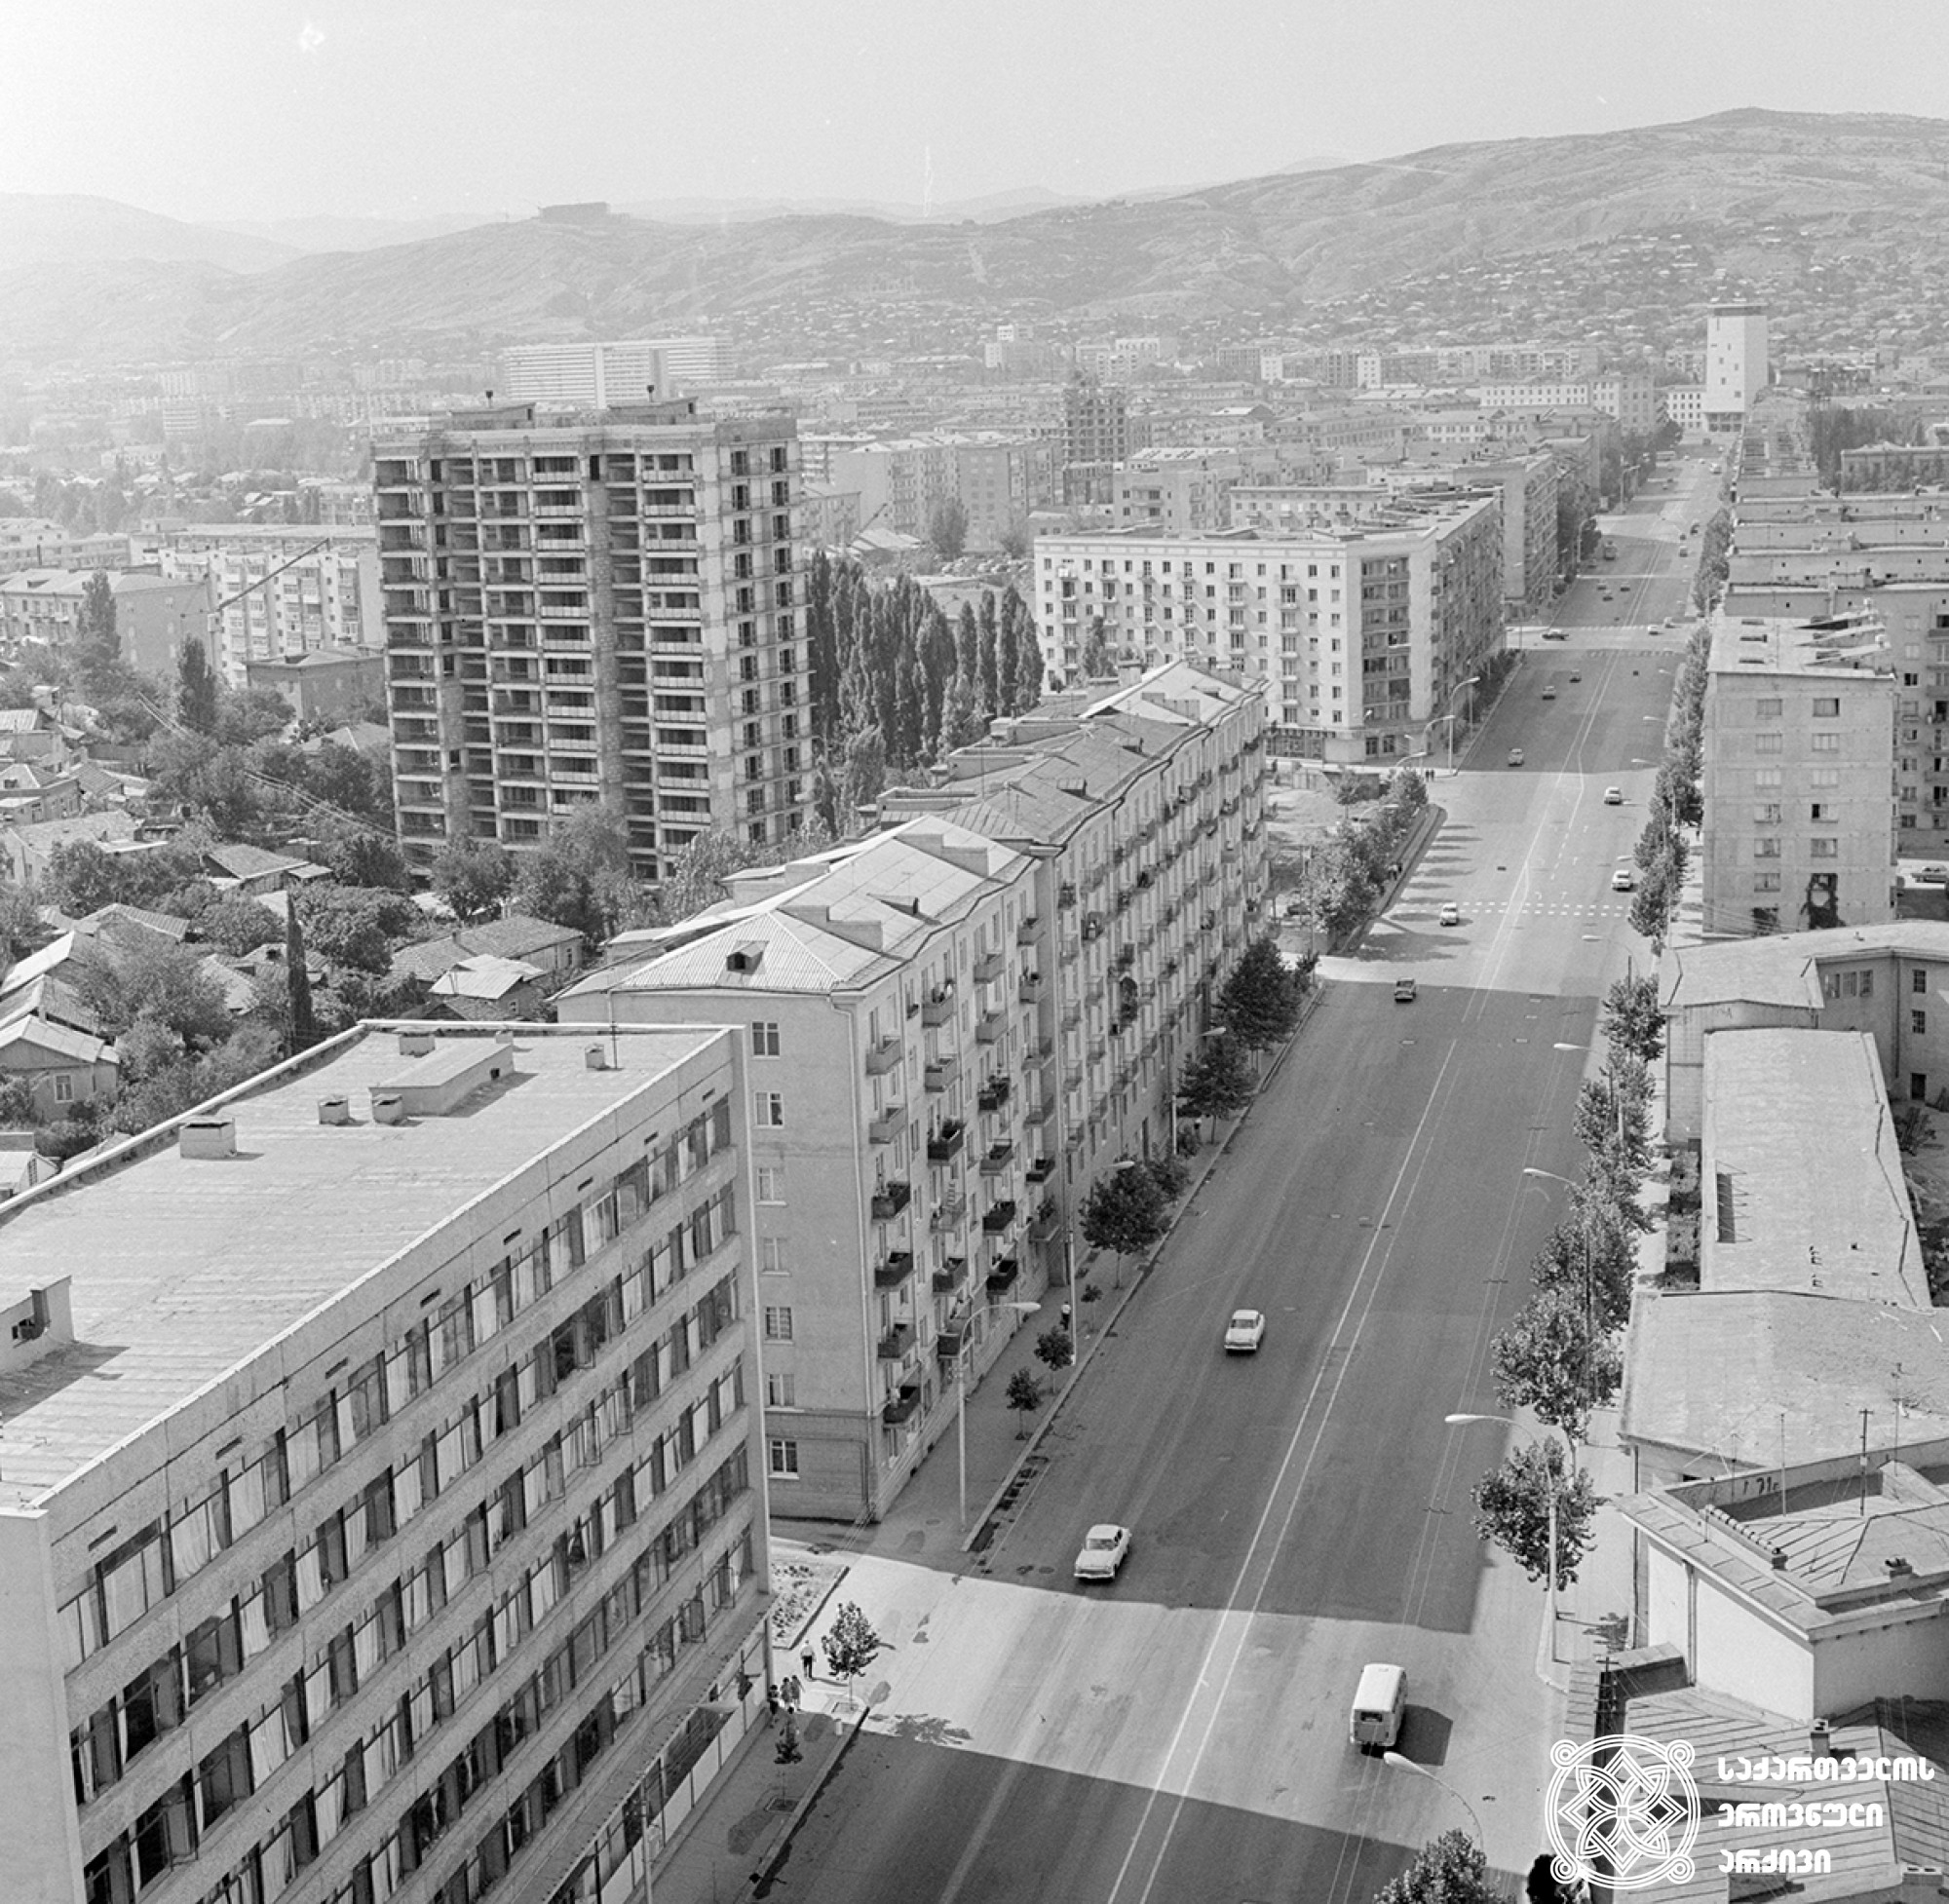 <br> პეკინის ქუჩის ზედხედი, 1972 წელი.
<br> ფოტოს ავტორი ს. თევზაძე.
<br> View on Pekini Street, 1972.
<br> Photo by S. Tevzadze.